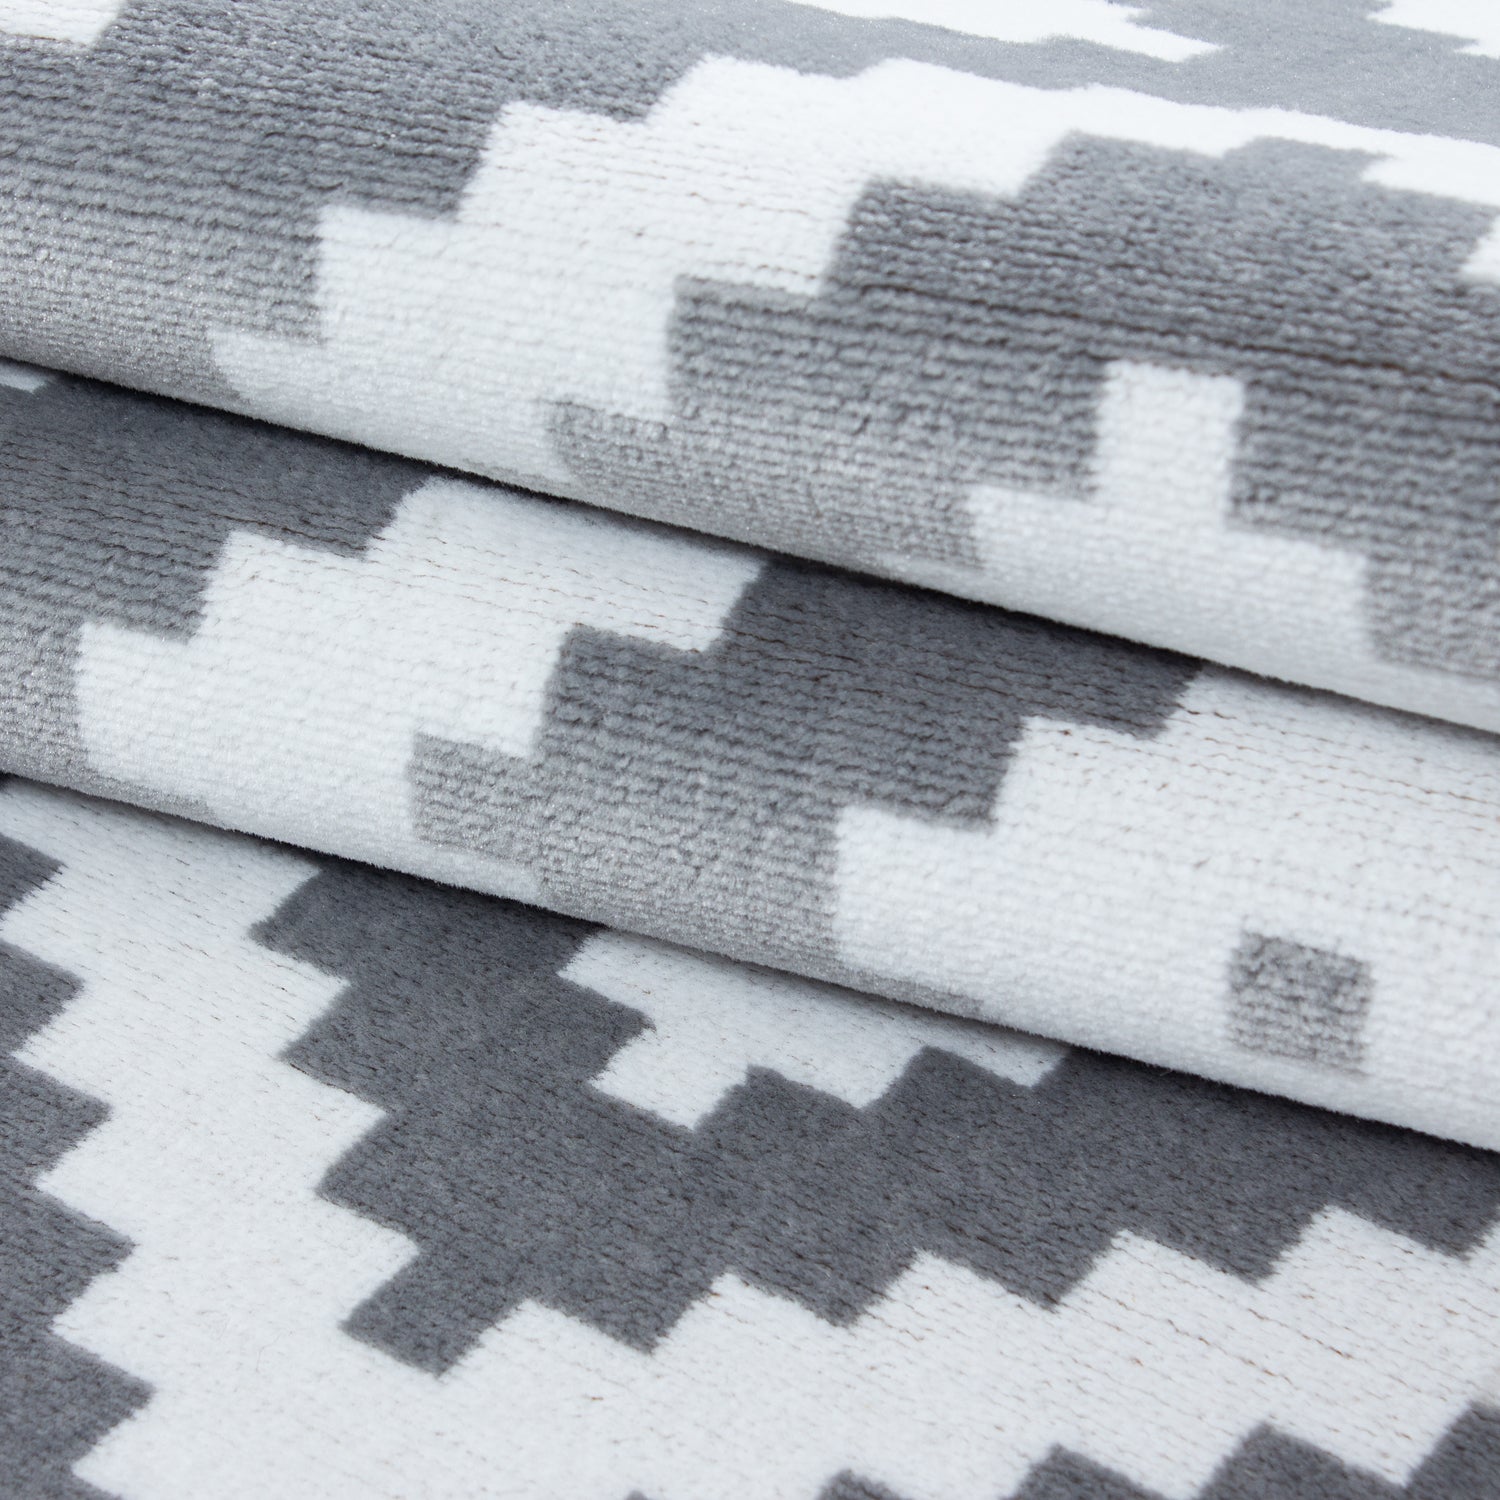 Teppich Bettumrandung 3 Teile Läuferset Karo Design Grau Weiß Meliert